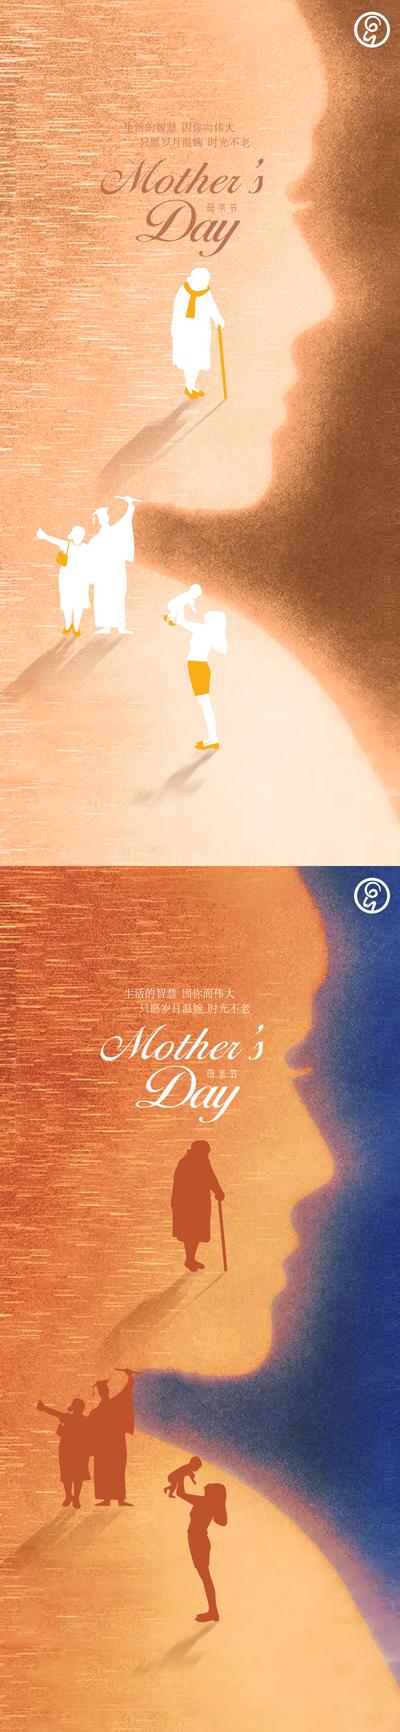 南门网 海报 公历节日 母亲节 系列 简约 剪影 岁月